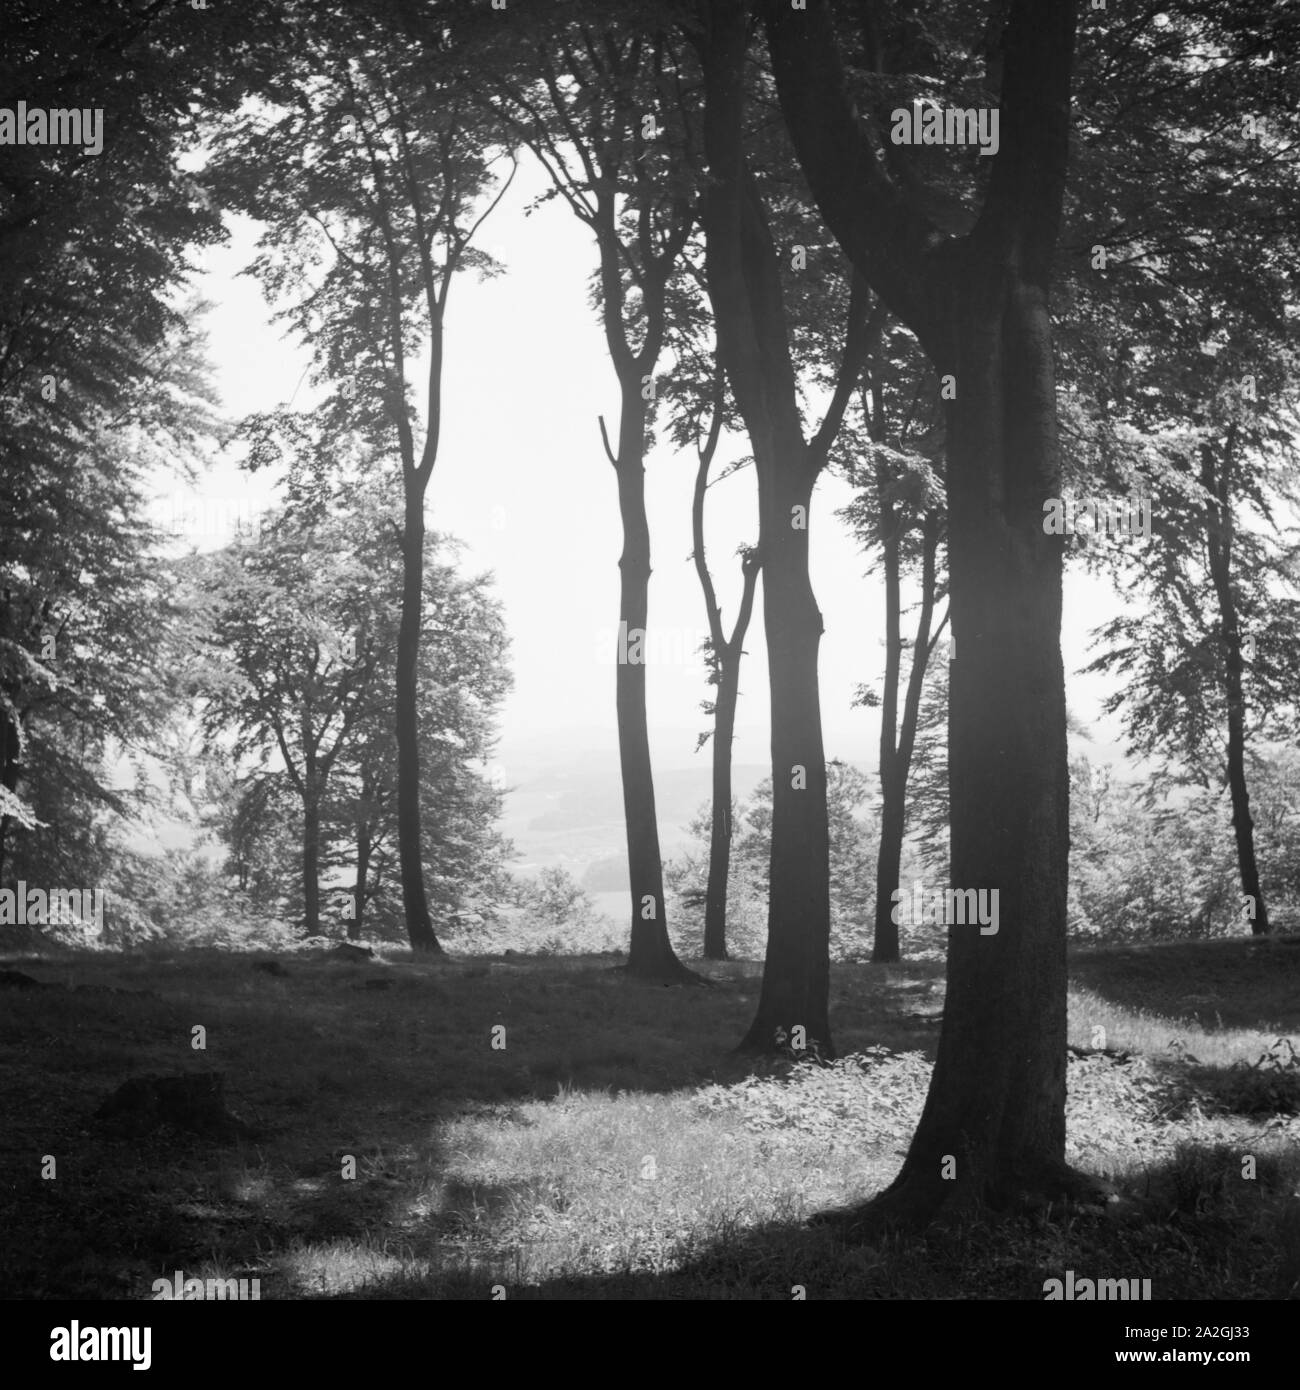 Wald in der Nähe vom Hermannsdenkmal in der Nähe von Hiddesen bei Detmold, Deutschland 1930er Jahre. Presso la foresta aroun dthe Hermann monumento accanto a Hiddesen vicino a Detmold, Germania 1930s. Foto Stock